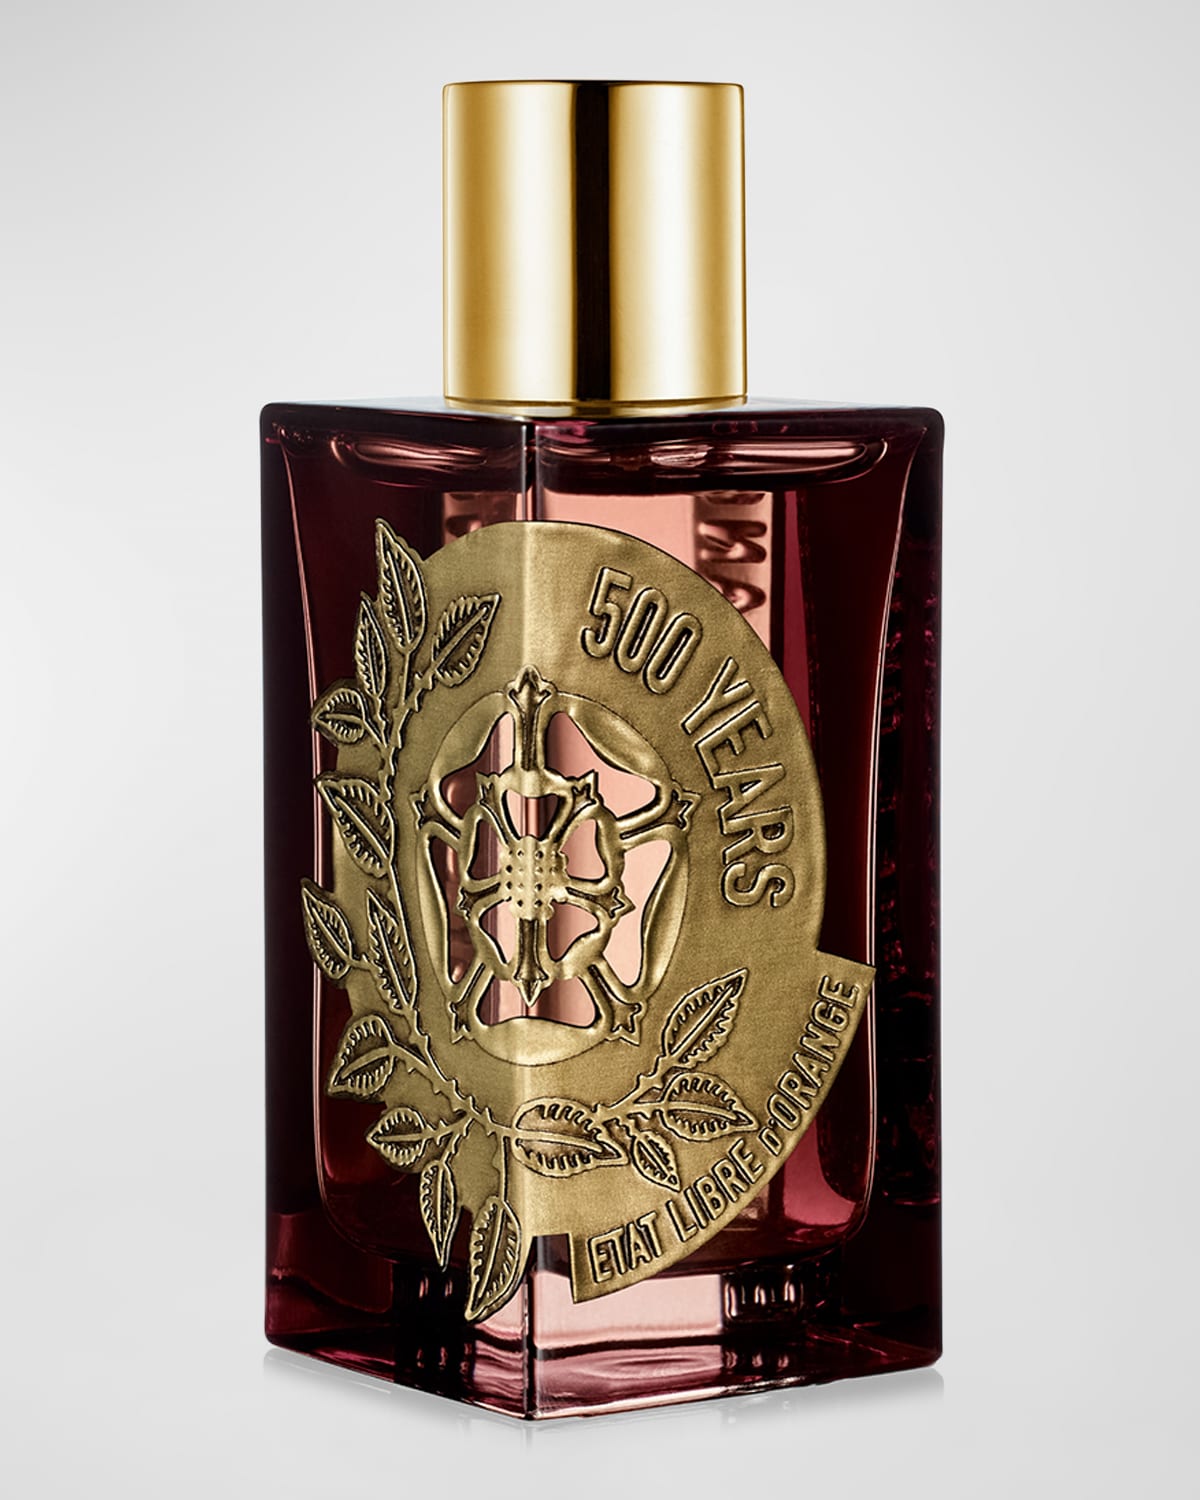 500 Years Eau de Parfum, 3.4 oz.